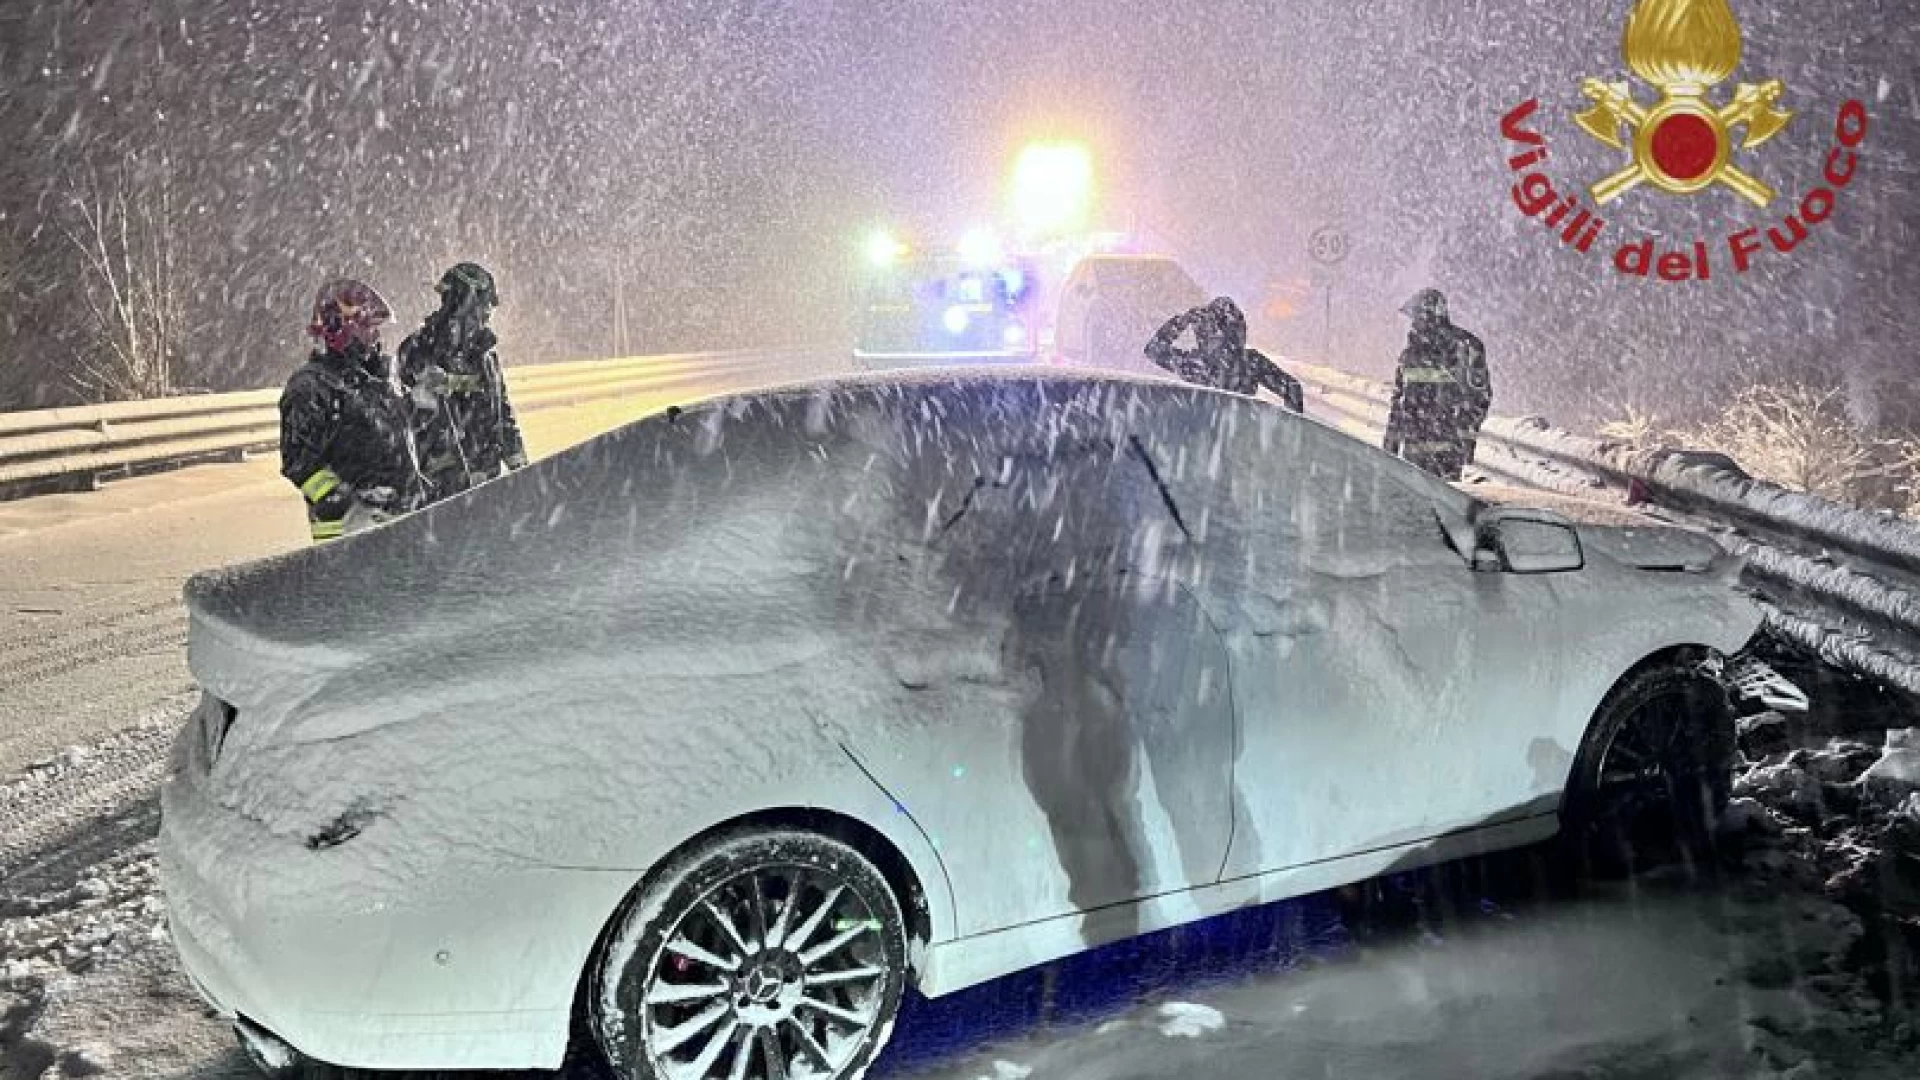 Maltempo e neve: nella serata di ieri incidente sulla S.S. 650 all’altezza di Pescolanciano. Il resoconto dei Vigili del Fuoco di Isernia.